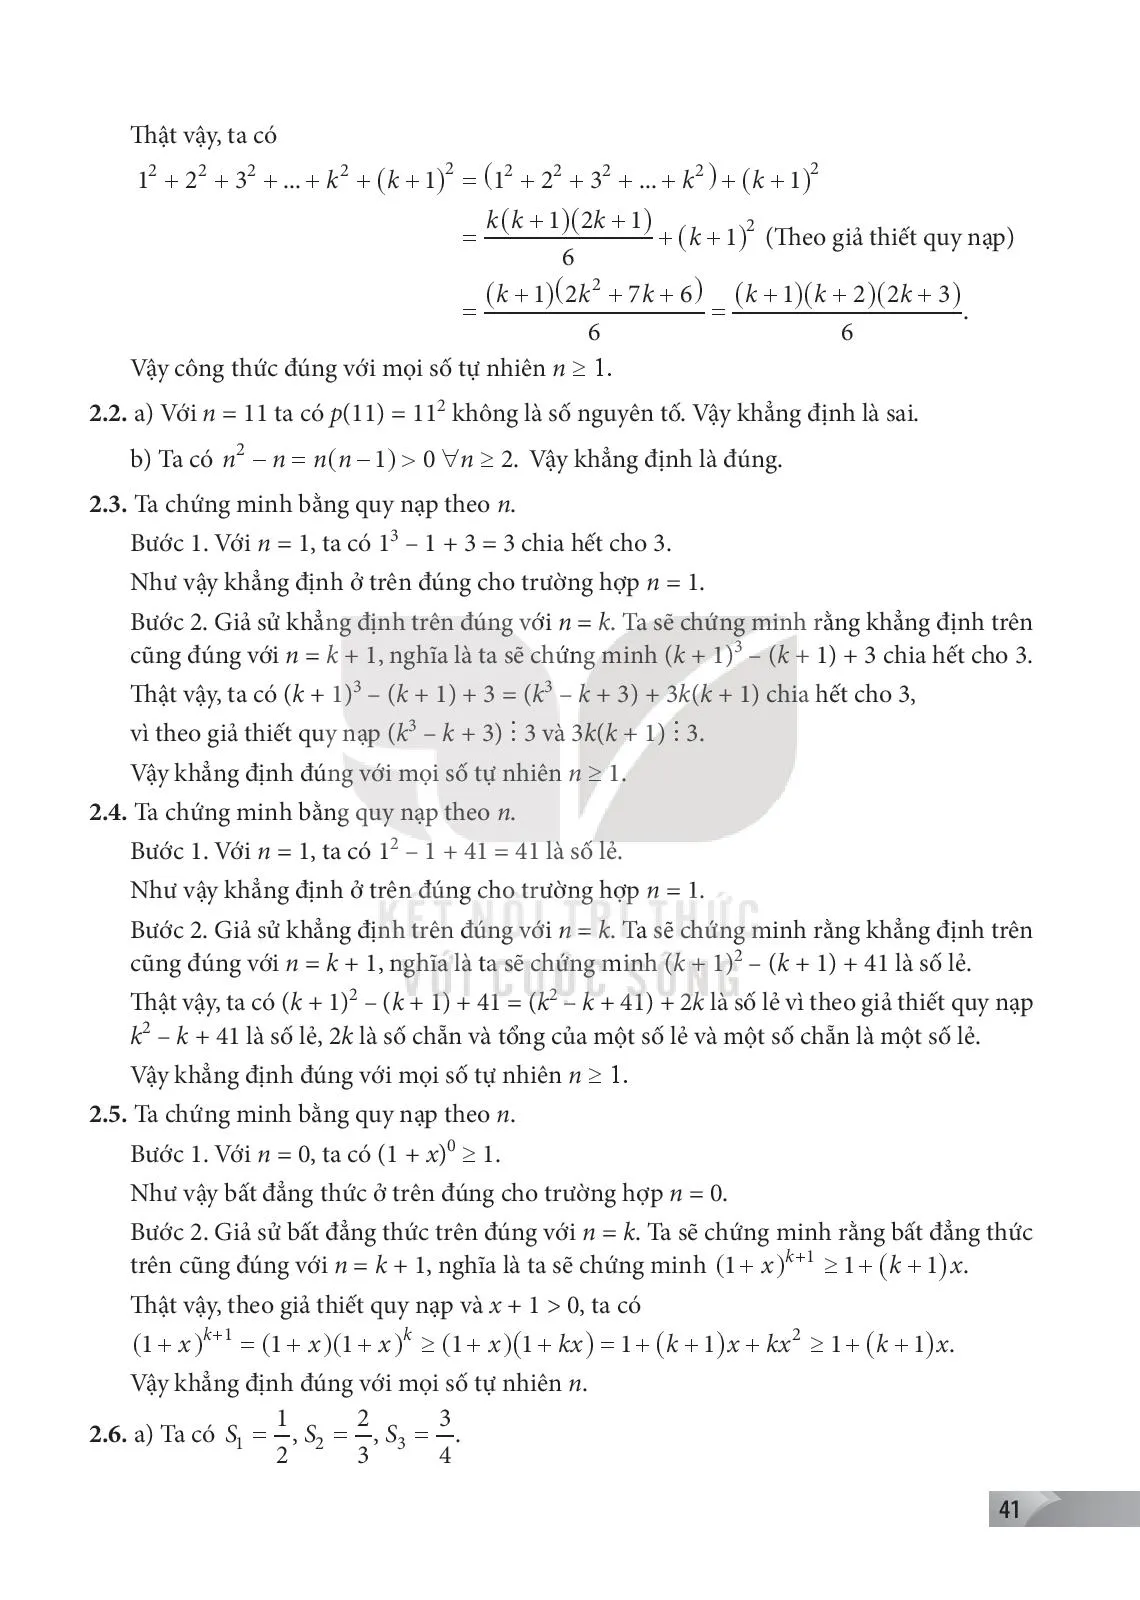 Bài 3. Phương pháp quy nạp toán học.